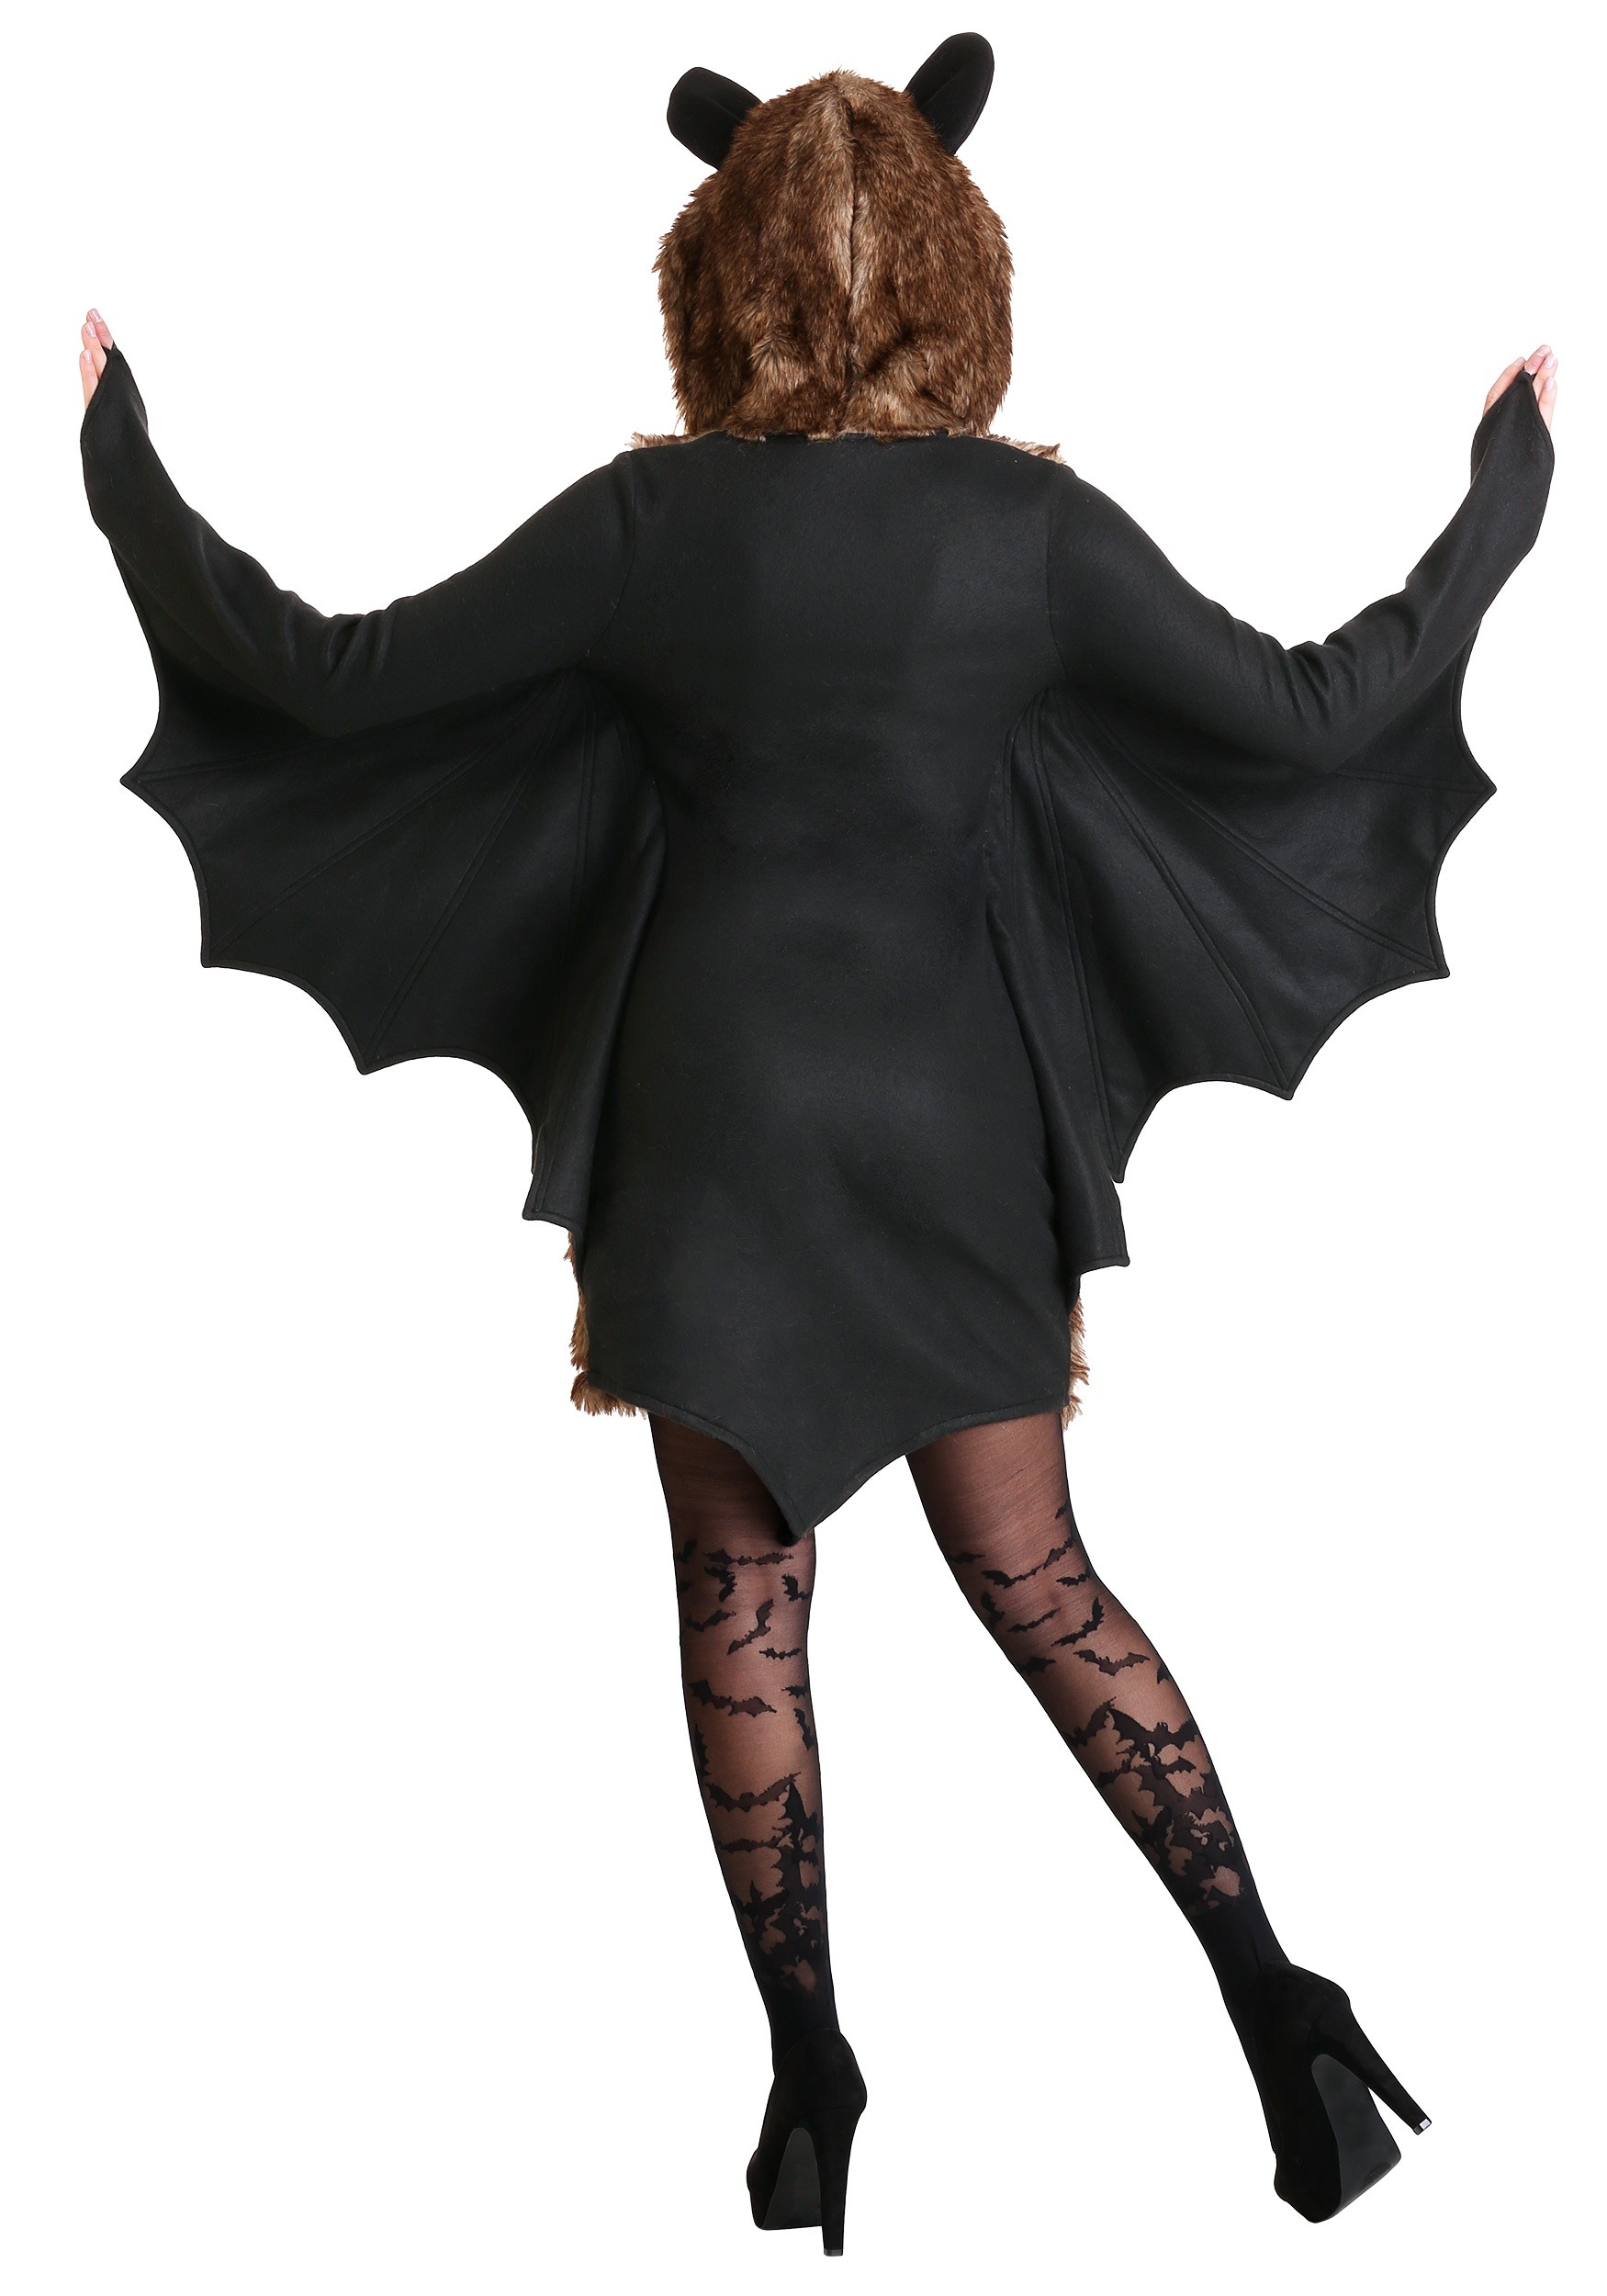 Deluxe Women's Bat Fancy Dress Costume , Adult Animal Fancy Dress Costumes